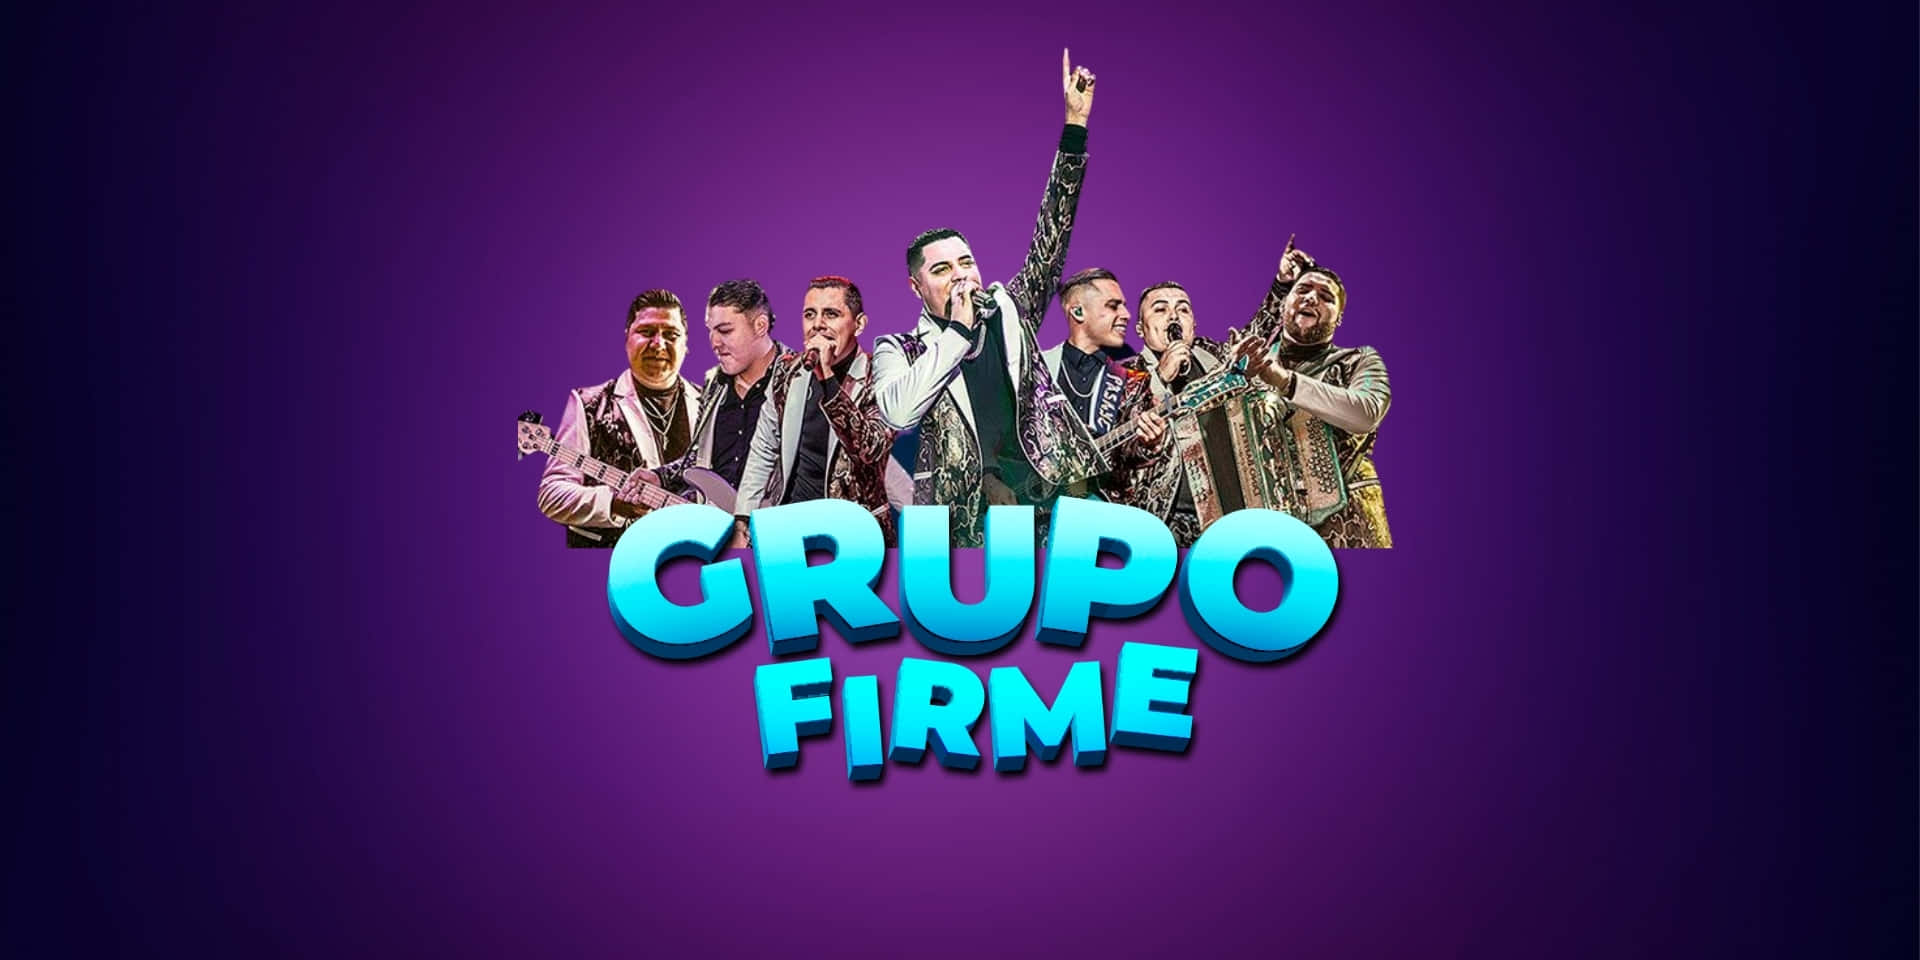 Grupofirme Bringt Ihnen Die Beste Regionale Mexikanische Musik. Wallpaper